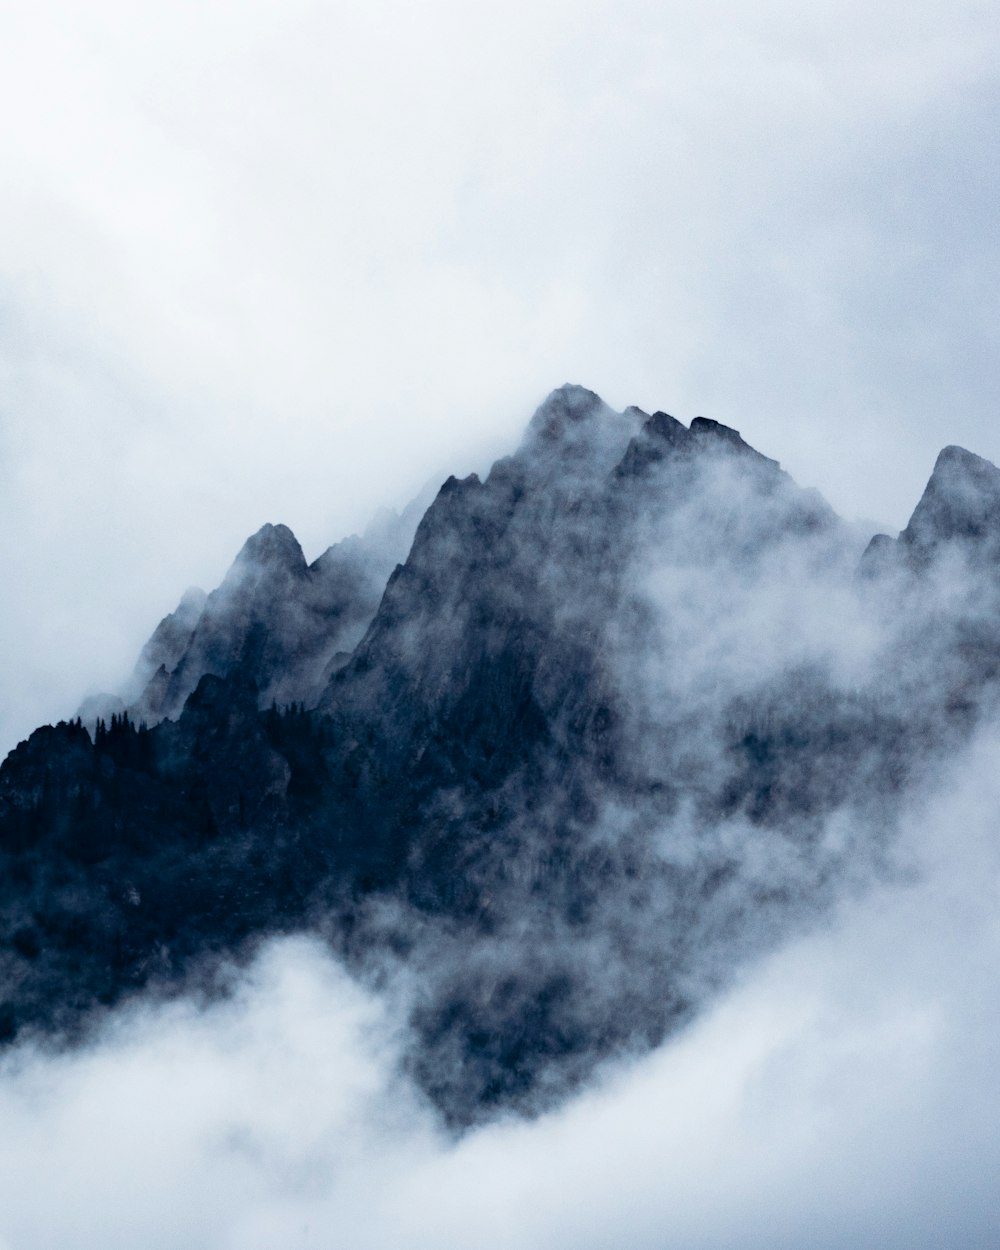 montagna nera coperta dalle nuvole